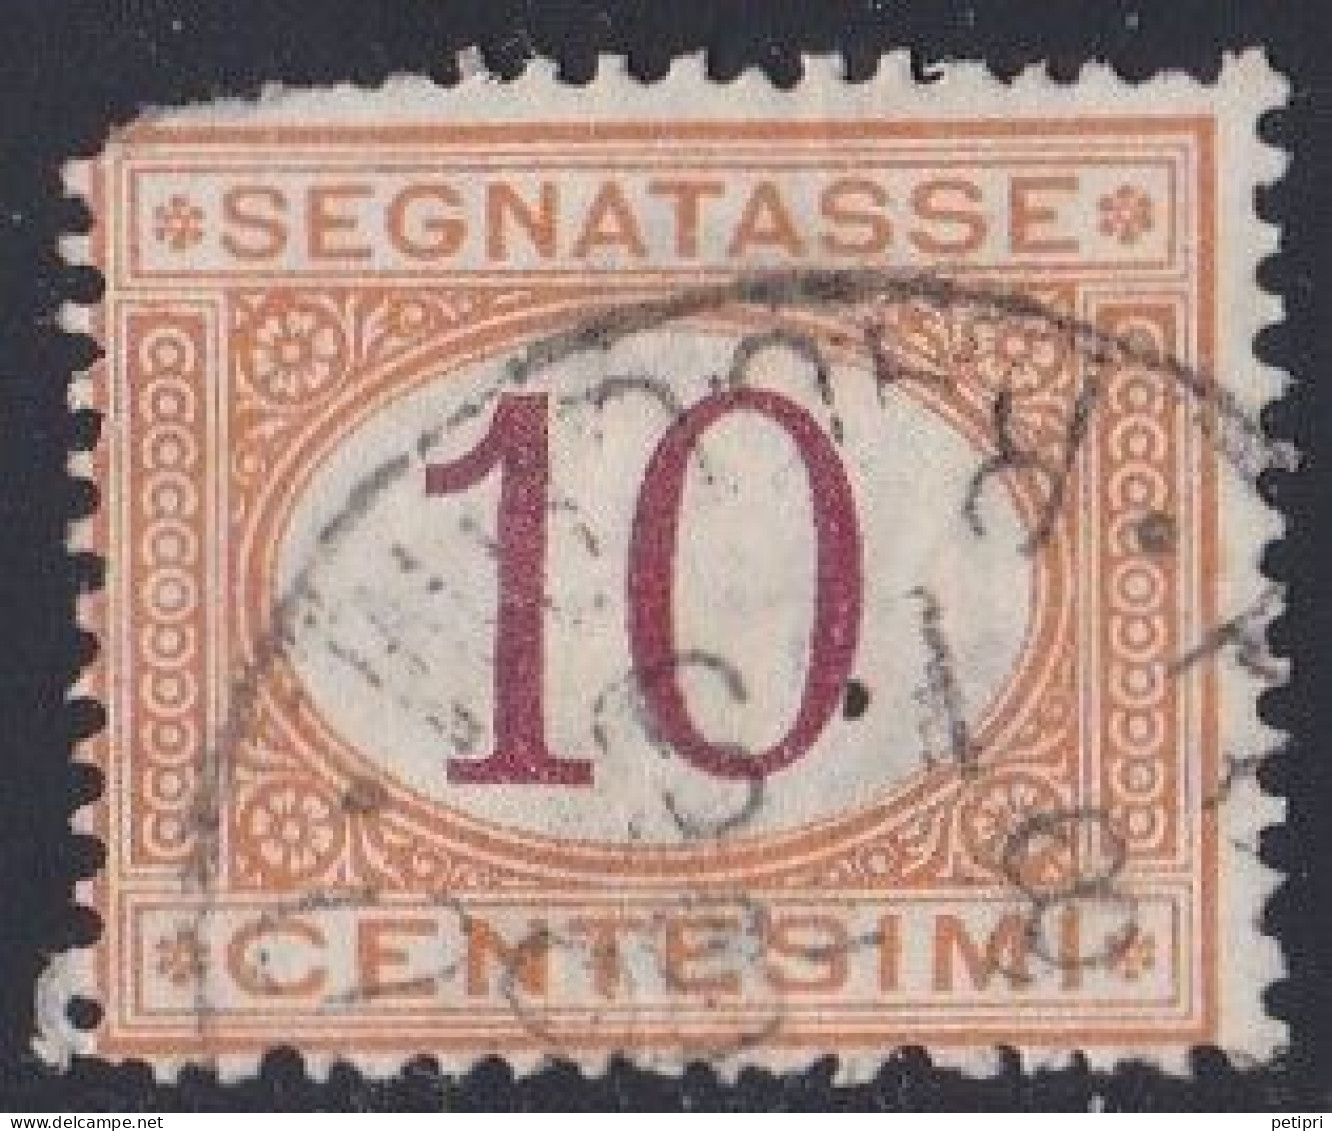 Italie - 1861 - 1878  Victor Emmanuel II  -  Segnatasse  10  Centesimi  Oblitéré - Postage Due